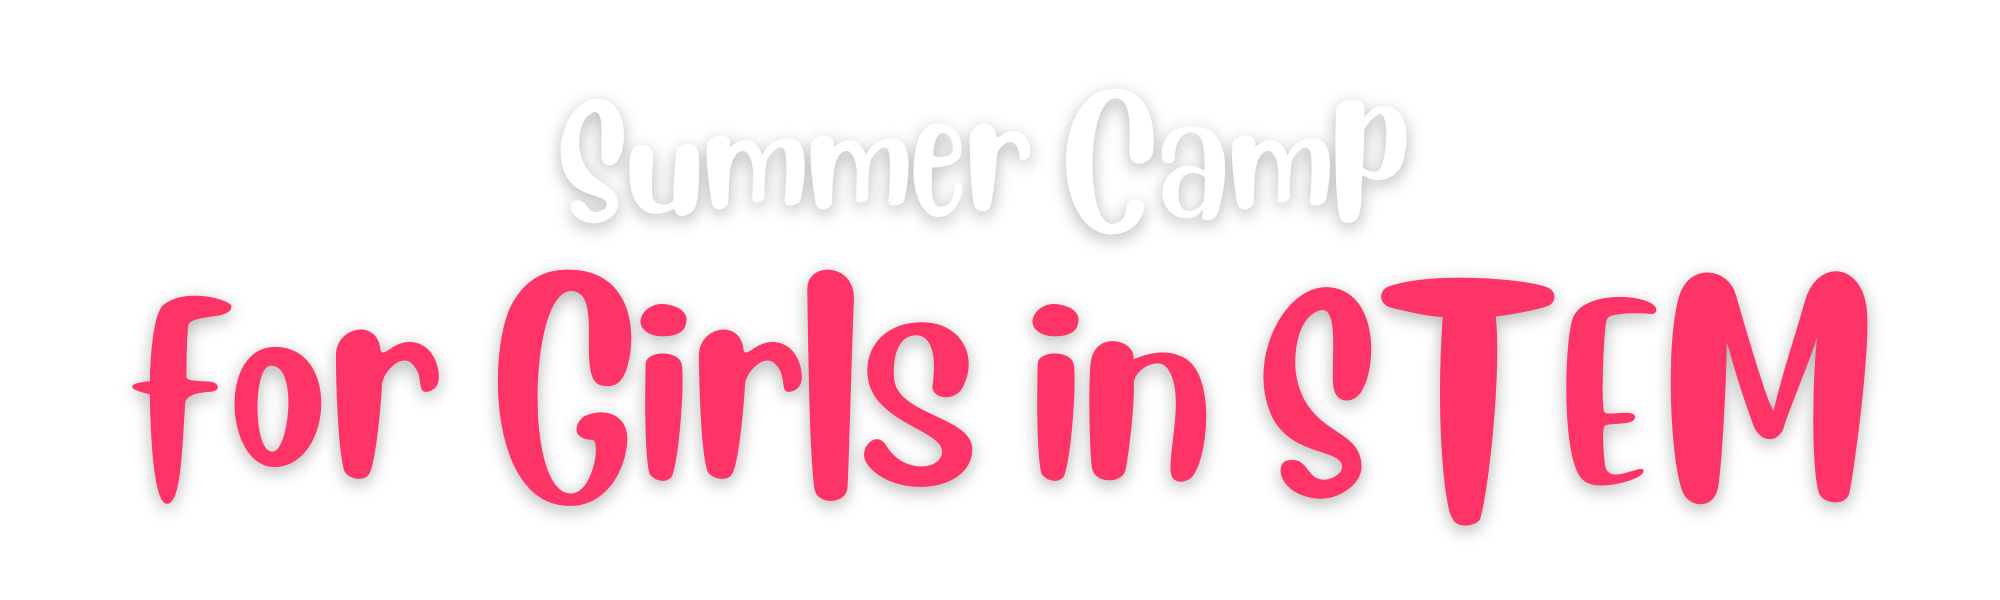 Summer camp header image (3)